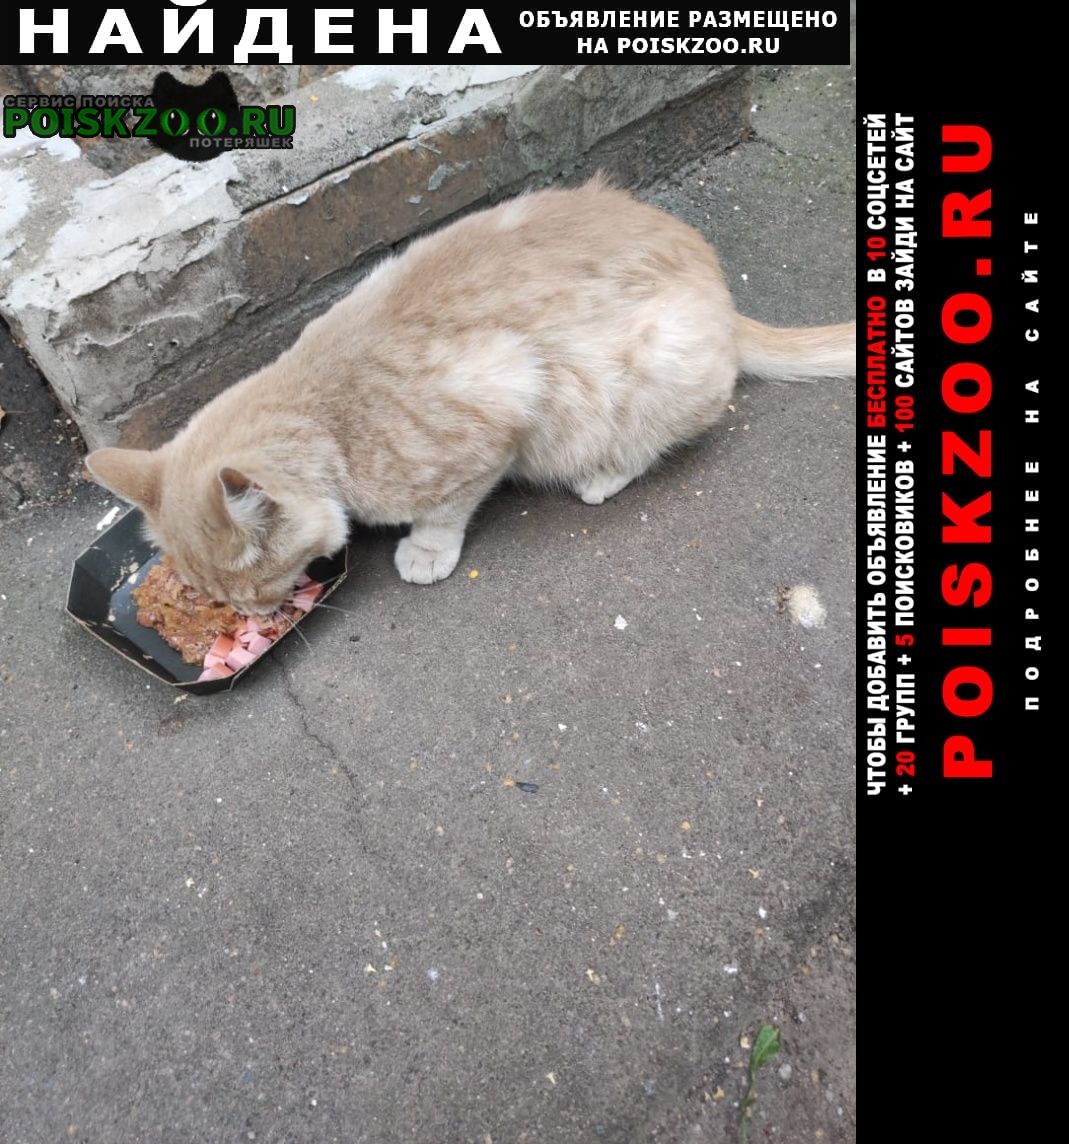 Москва Найден кот палевый кот на улице флотская